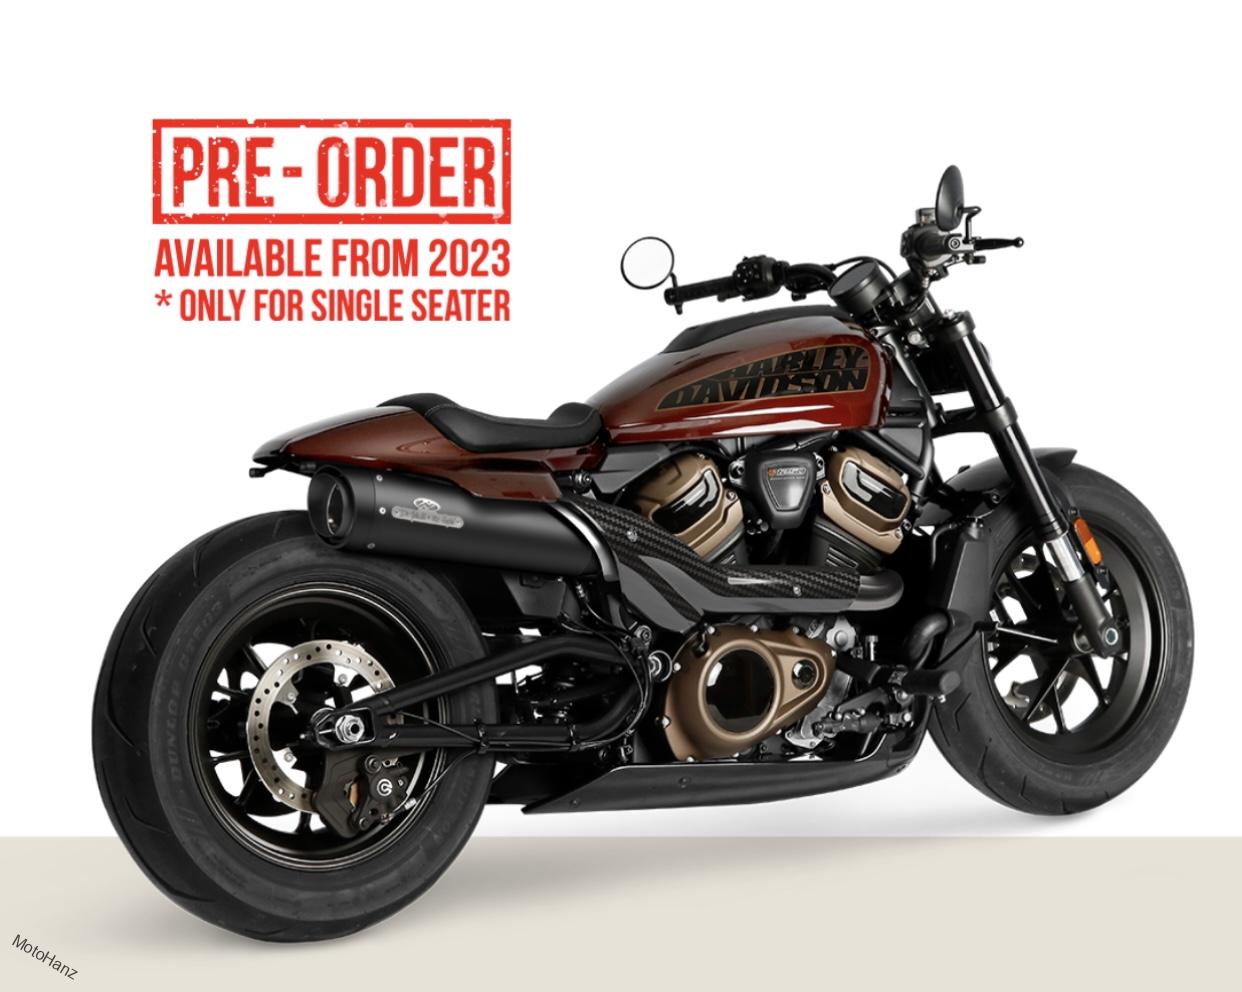 Elektronicky stavitelný výfuk Jekill&Hyde na Harley Davidson Sportster S